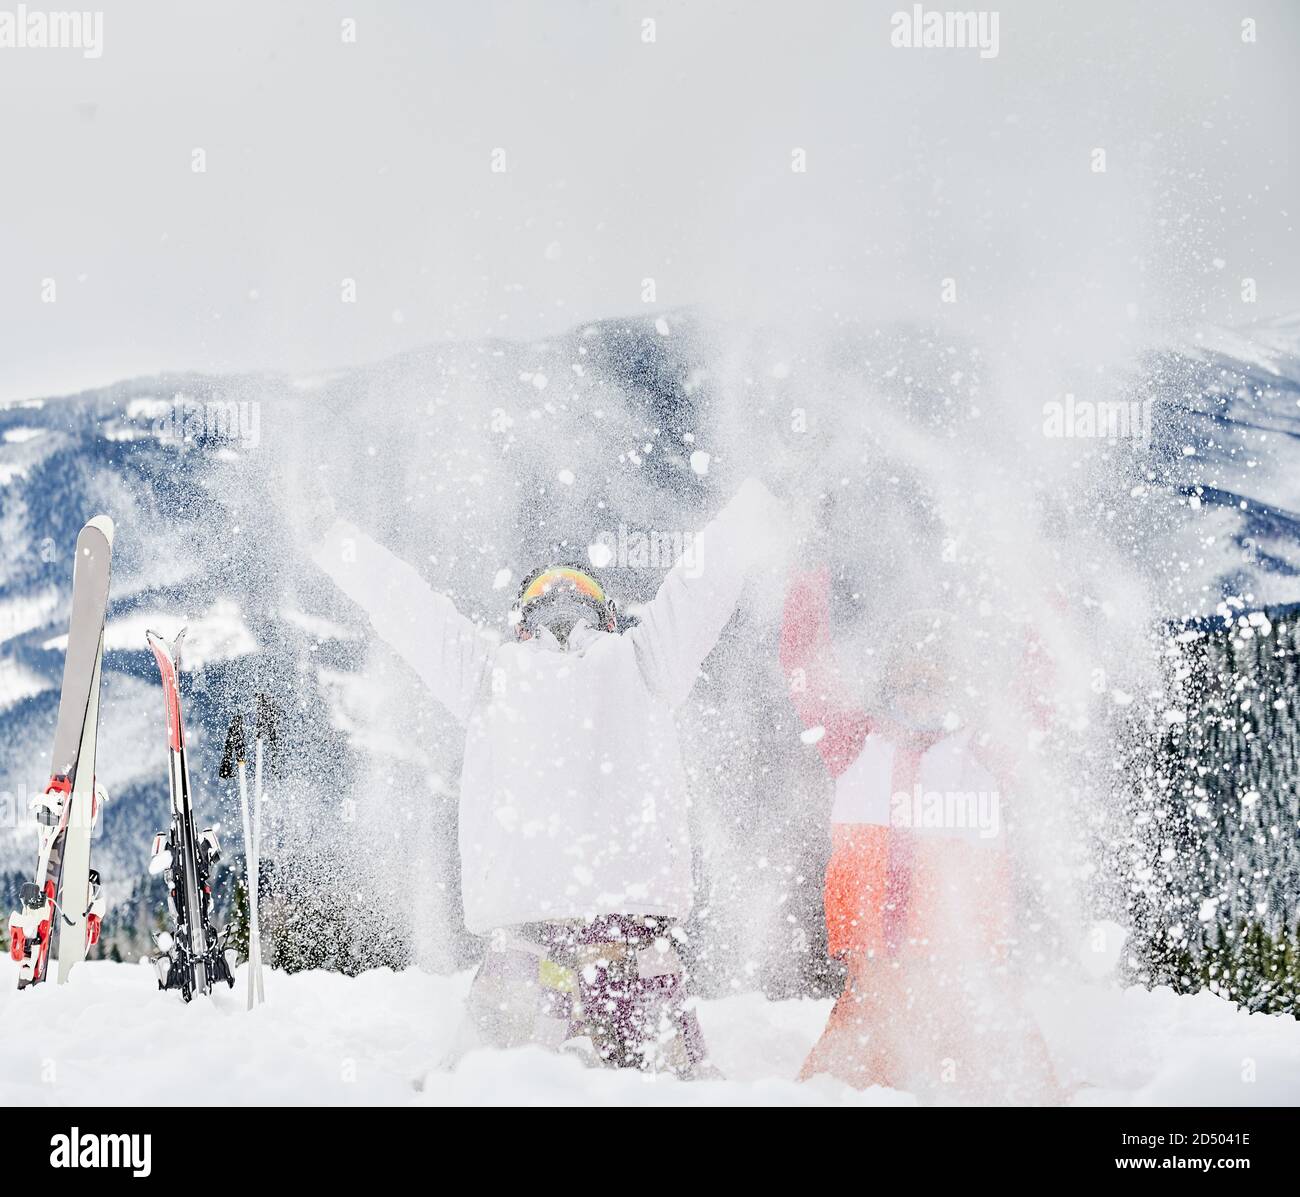 Dos esquiadores arrojando nieve fresca en polvo en el aire. Hombre y mujer divirtiéndose en la estación de esquí con hermosas montañas de fondo. Concepto de actividades deportivas de invierno, diversión y relaciones. Foto de stock